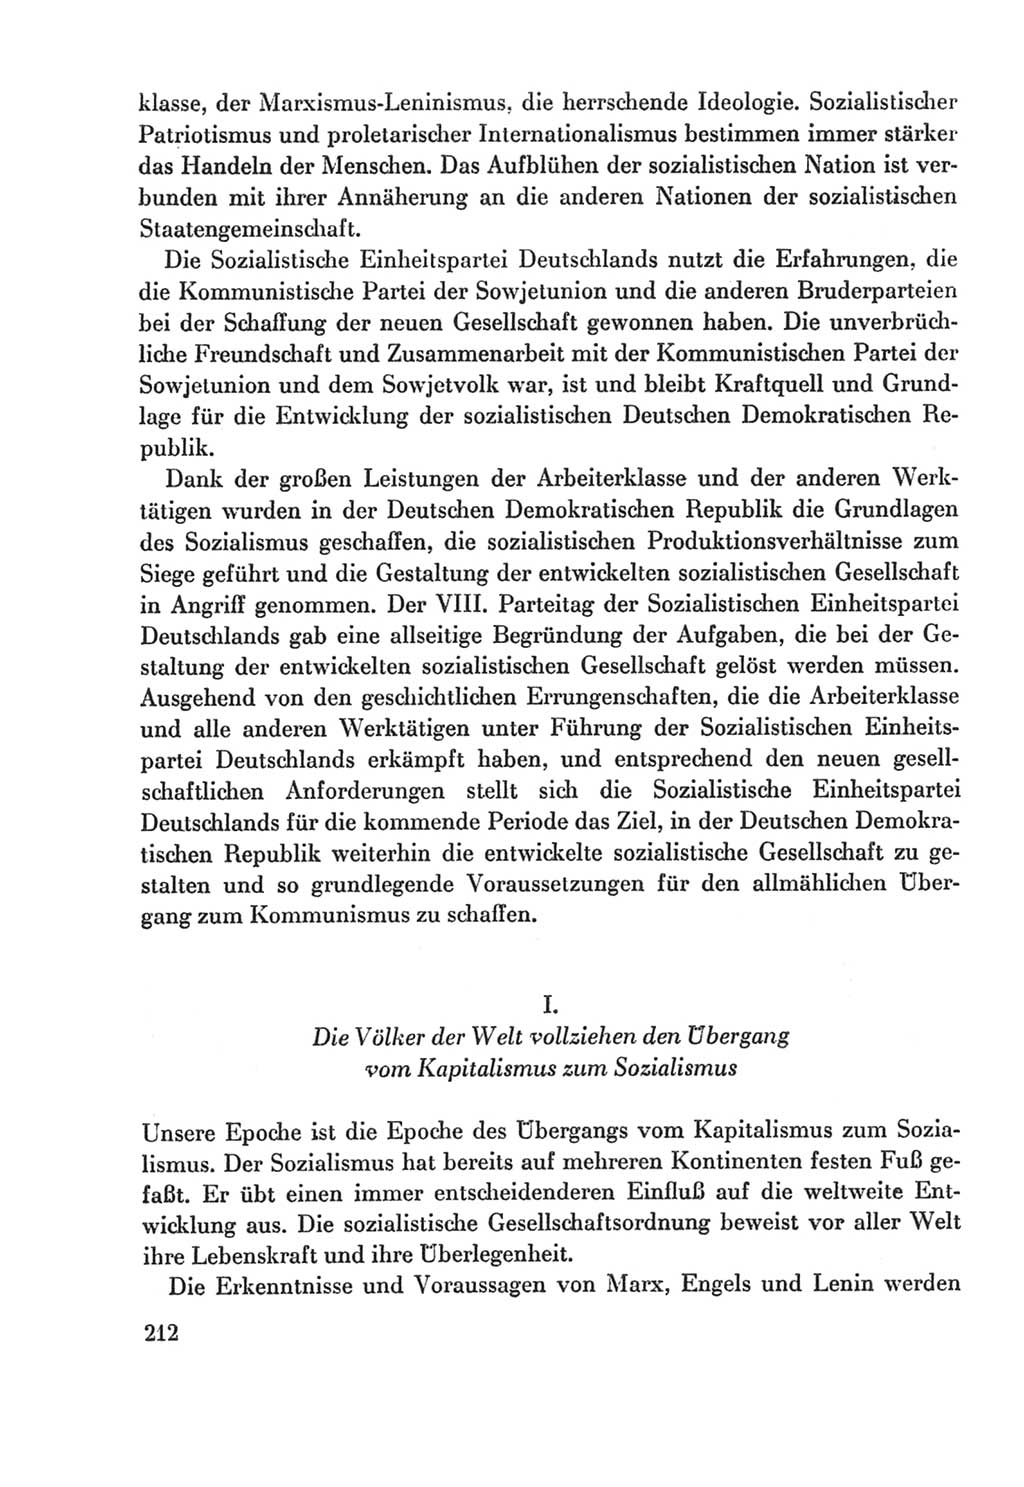 Protokoll der Verhandlungen des Ⅸ. Parteitages der Sozialistischen Einheitspartei Deutschlands (SED) [Deutsche Demokratische Republik (DDR)] 1976, Band 2, Seite 212 (Prot. Verh. Ⅸ. PT SED DDR 1976, Bd. 2, S. 212)